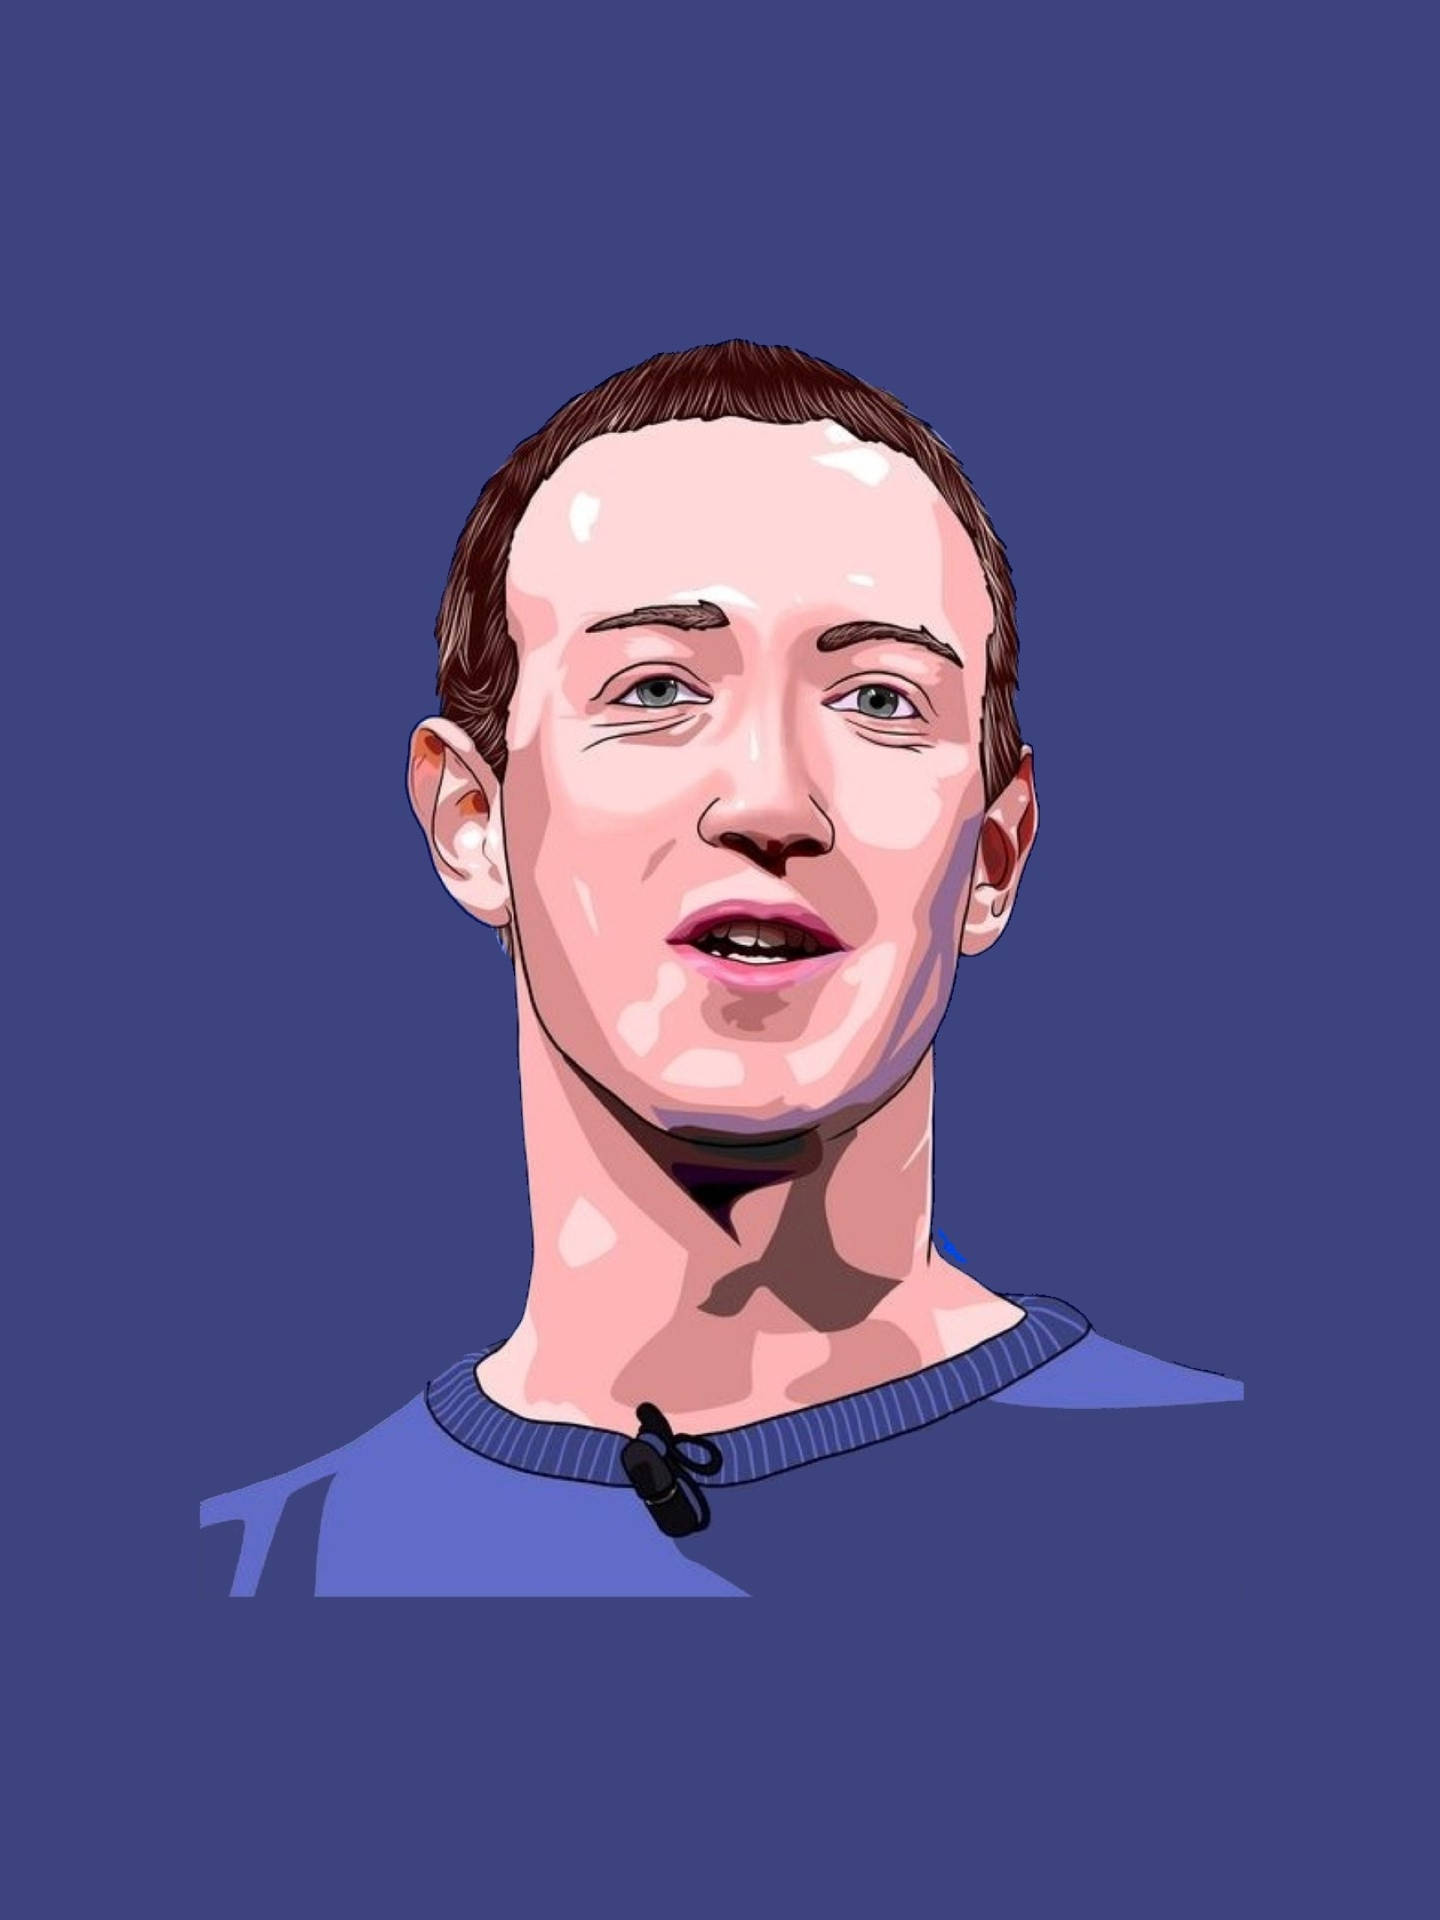 Digital Art Mark Zuckerberg Wallpaper